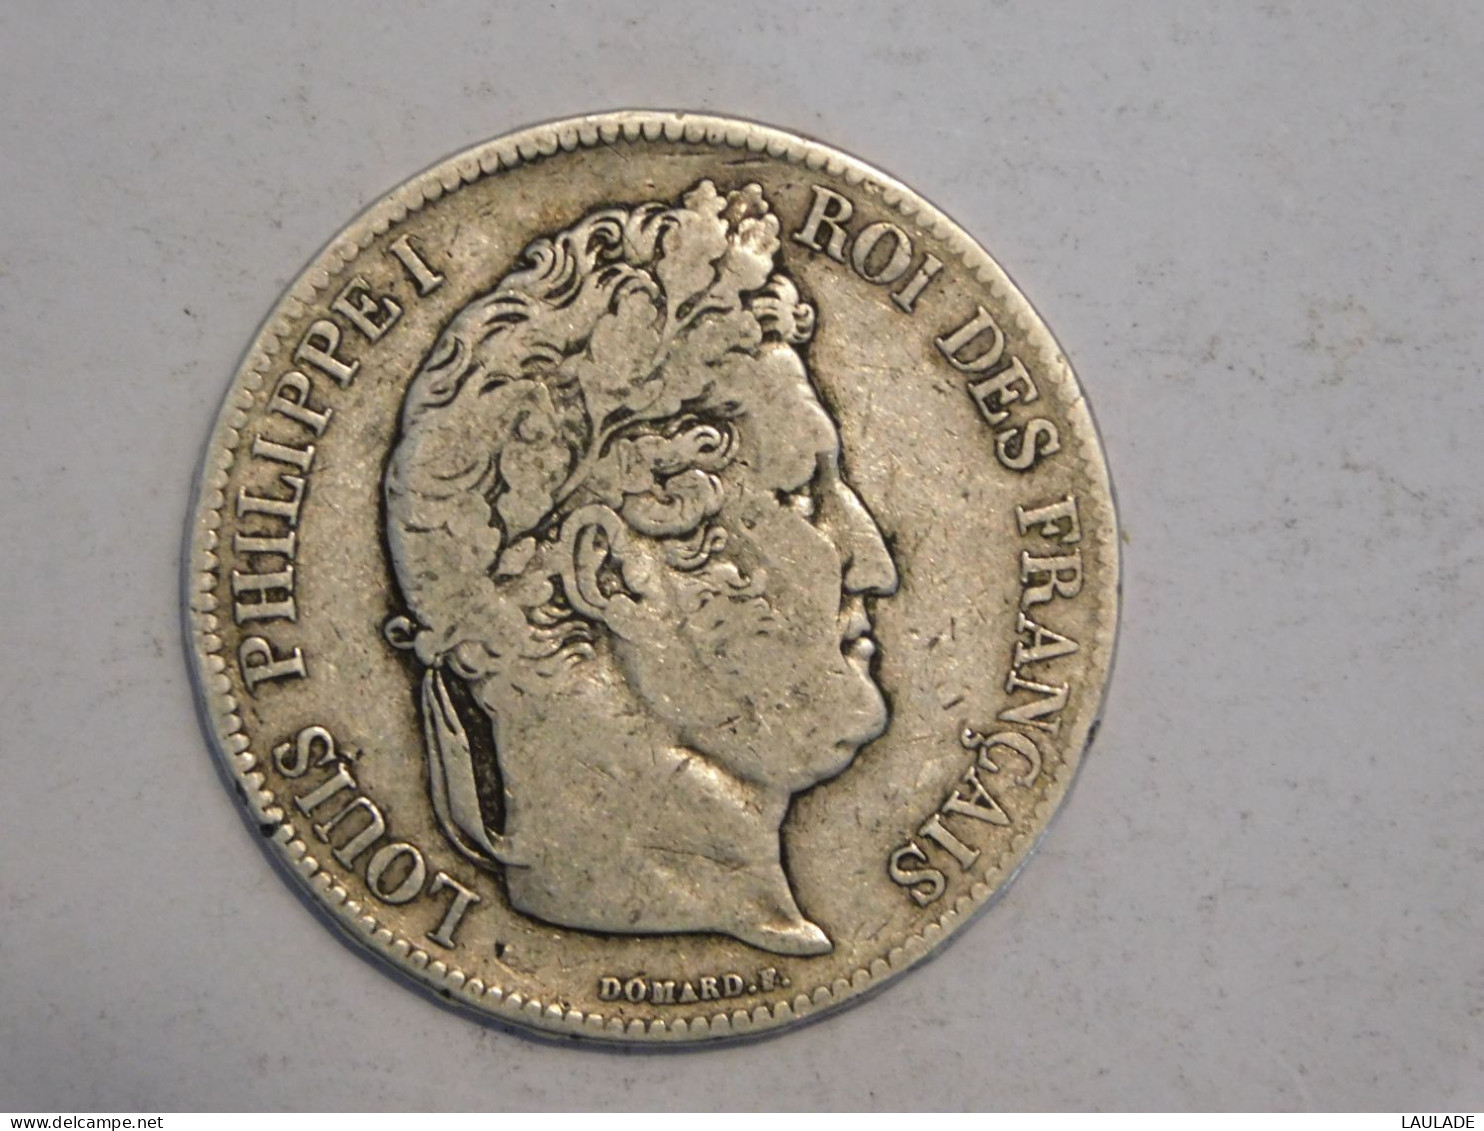 FRANCE 5 Francs 1832 H - Silver, Argent Franc - 5 Francs